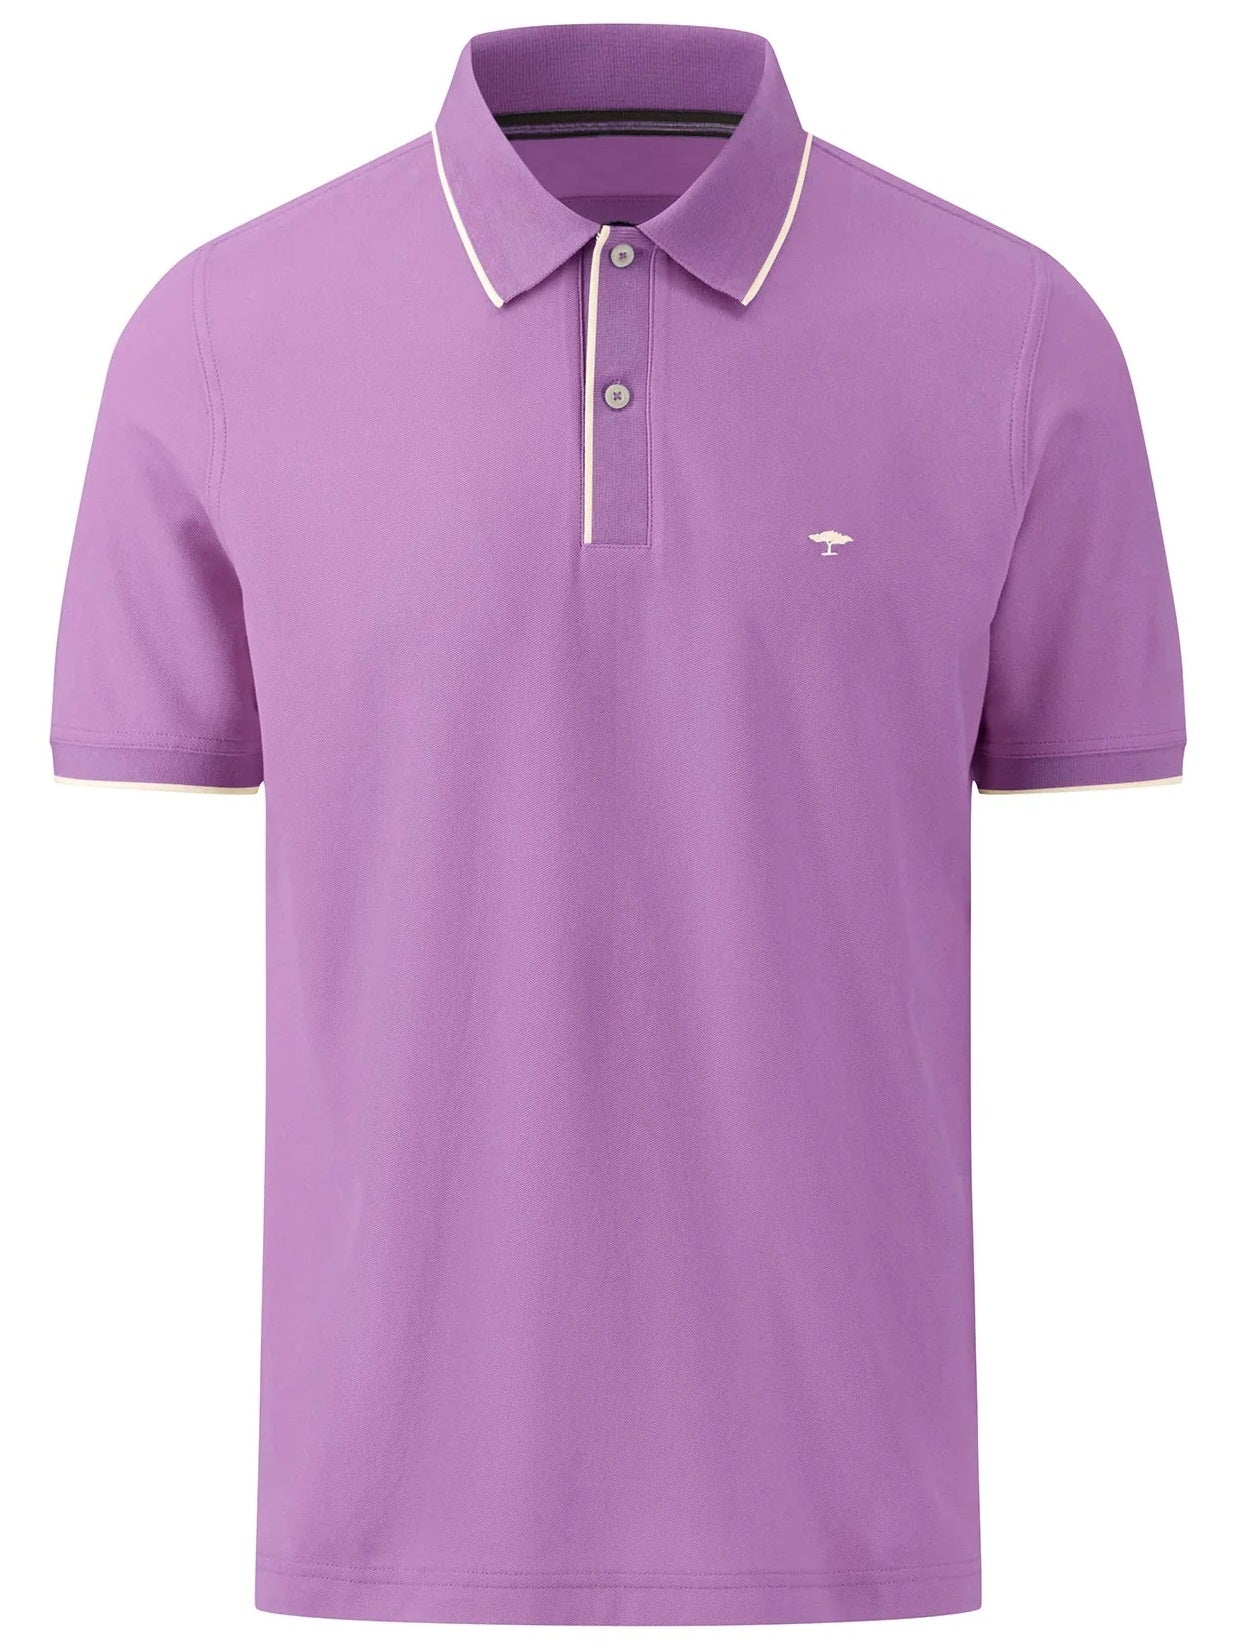 FYNCH HATTON Modern-Fit Polo Shirt - Men's Cotton Pique – Dusty Lavender